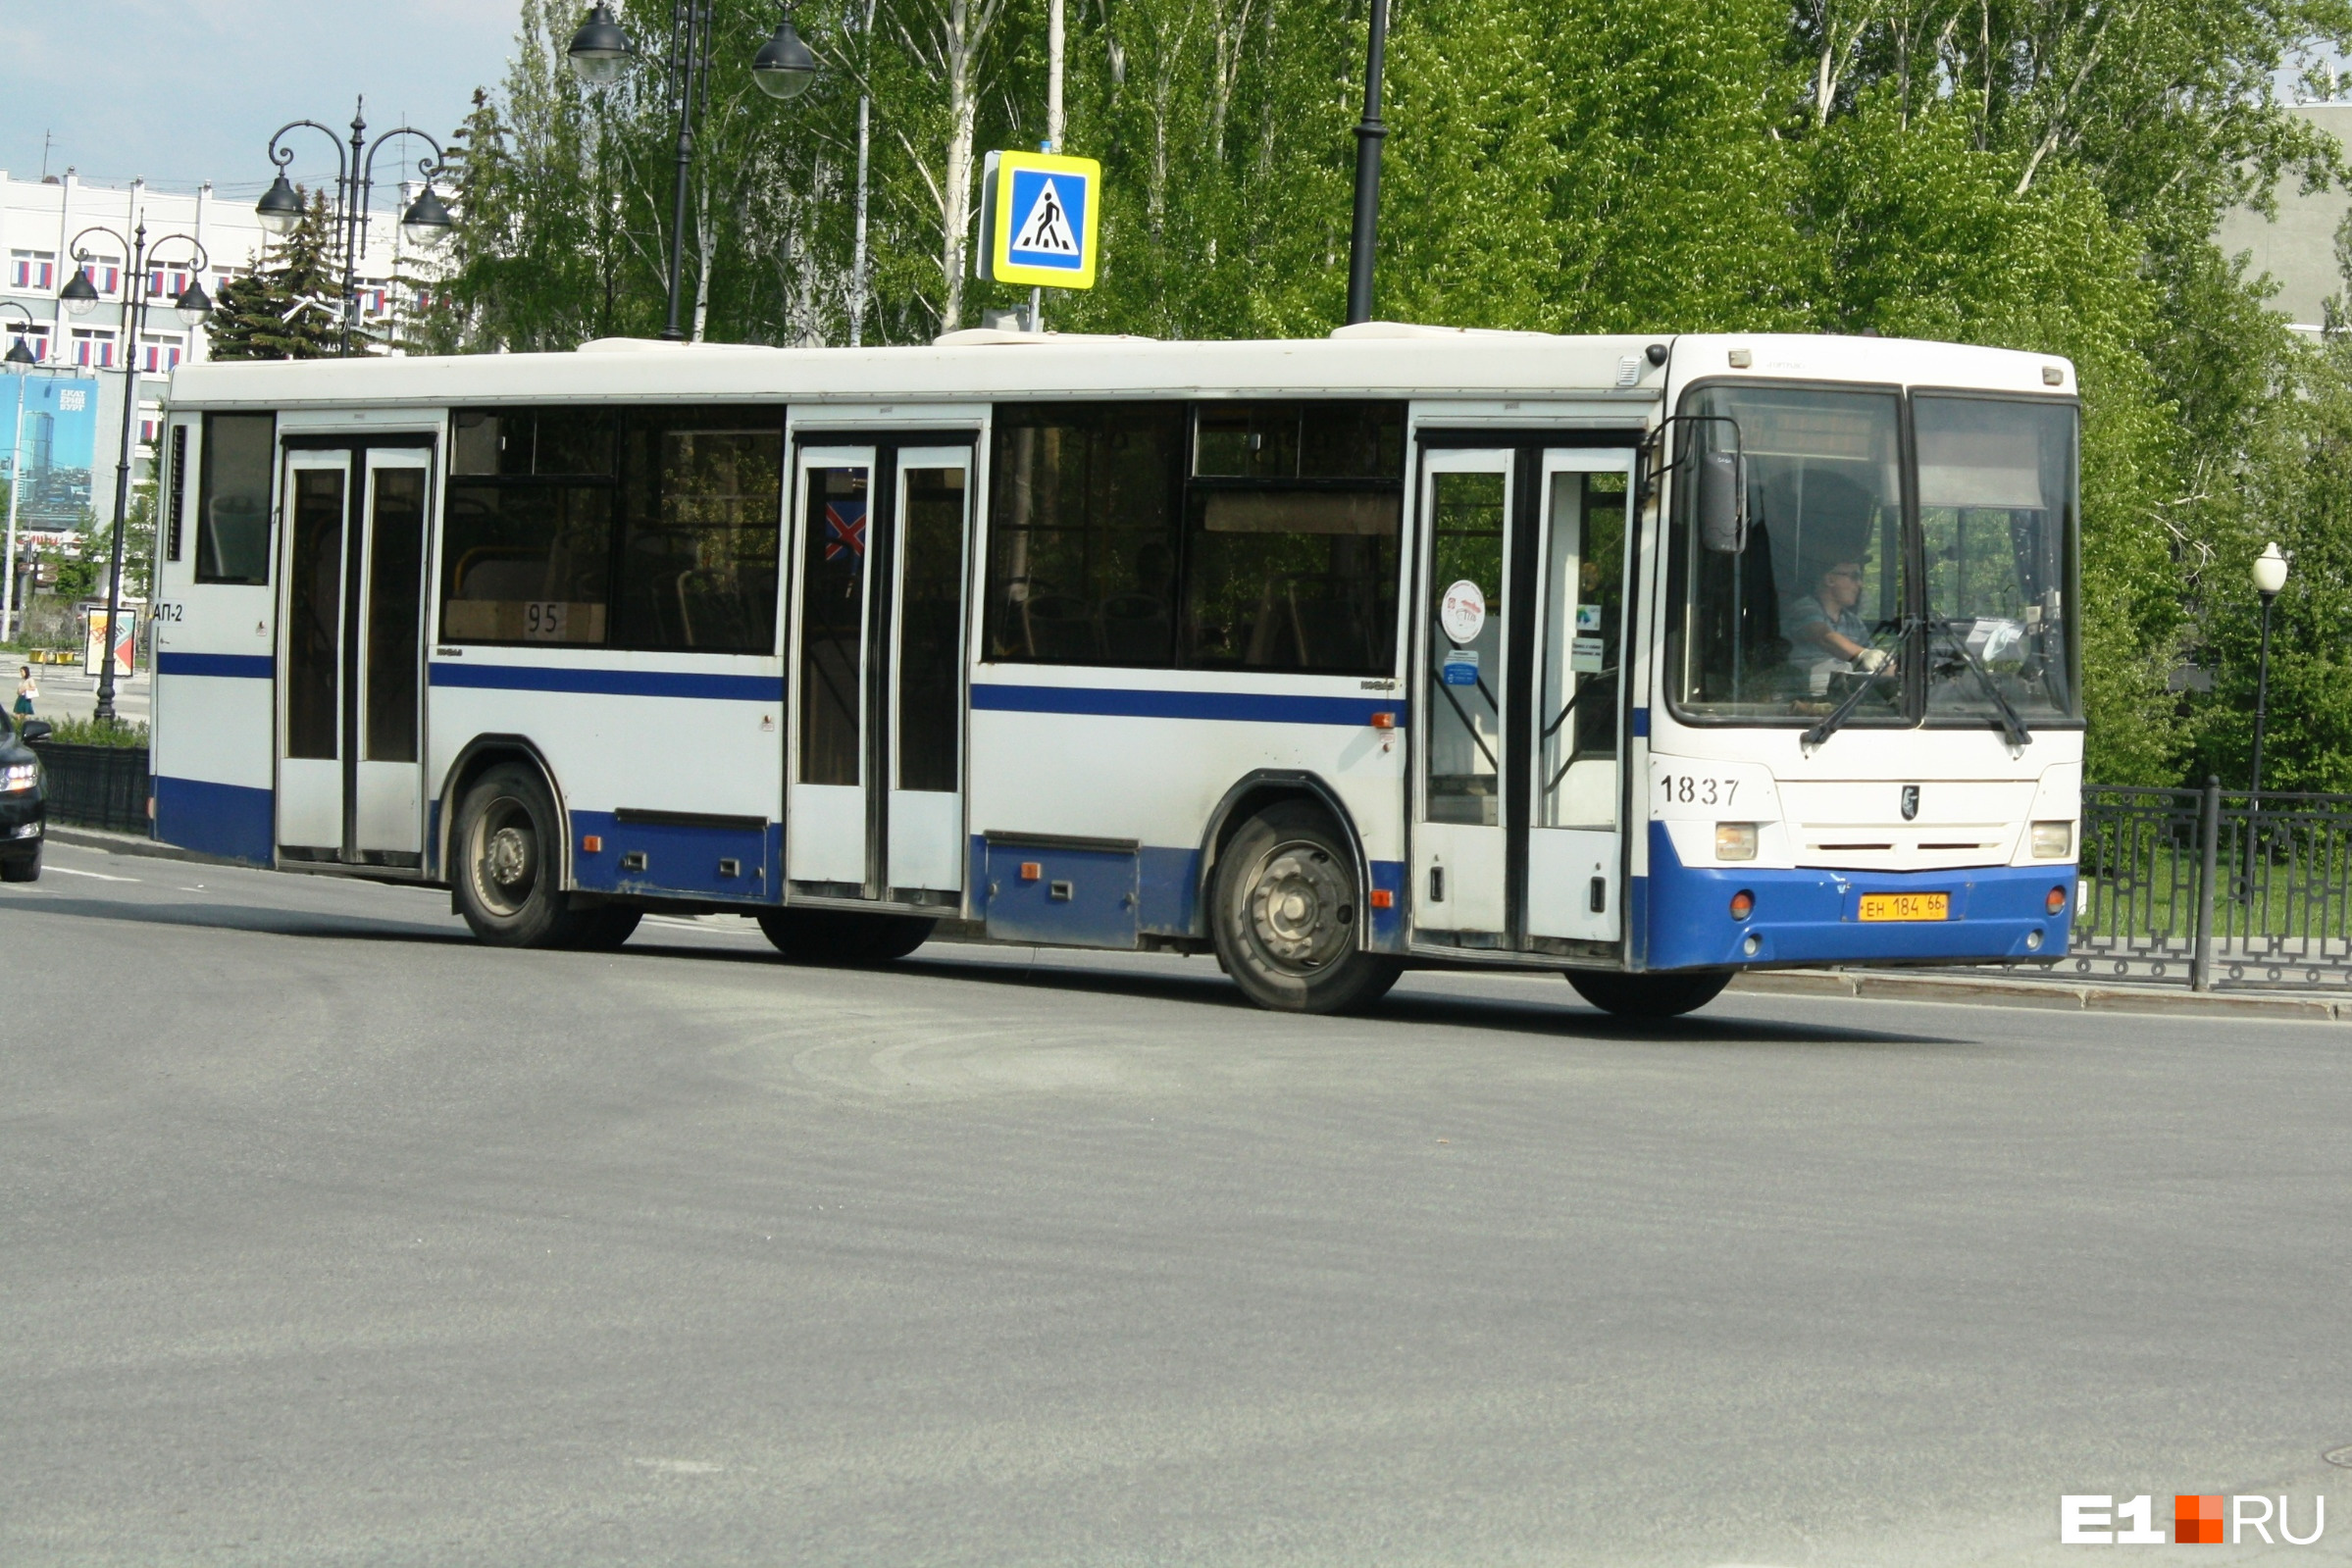 В Екатеринбурге пассажир догнал автобус, сел в салон и умер